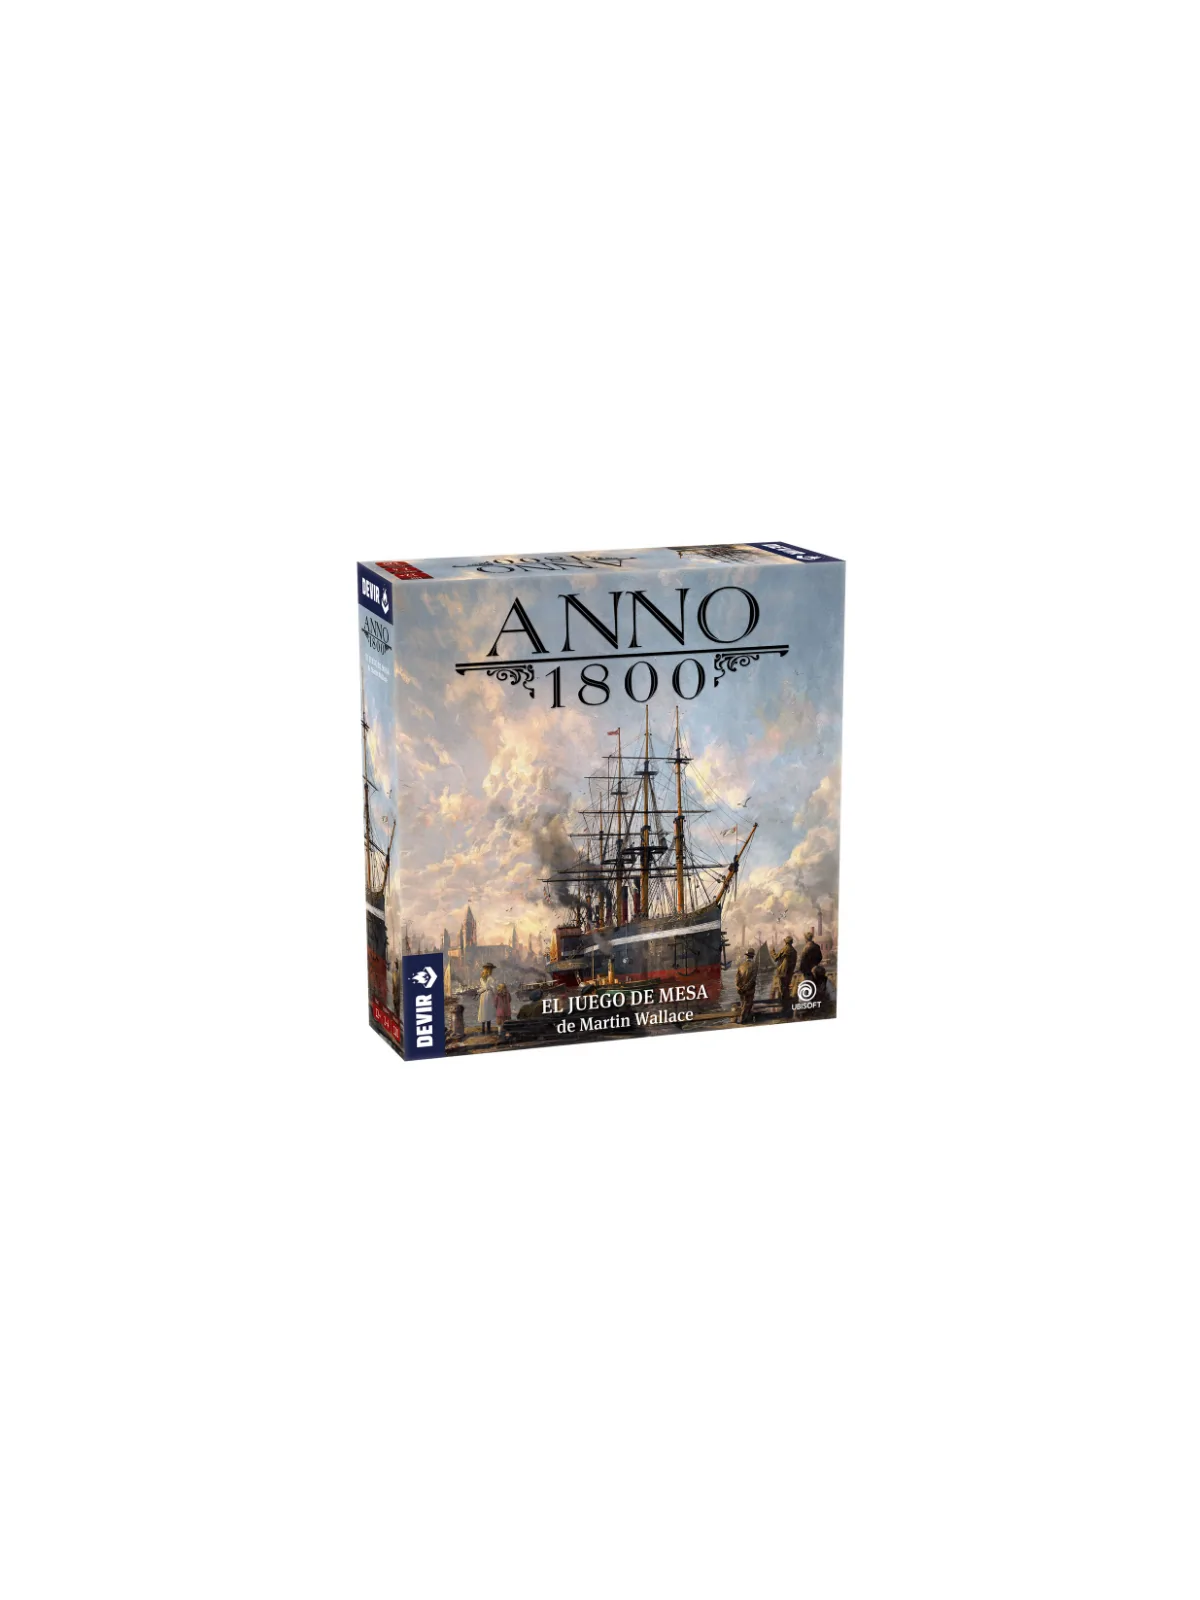 Comprar Anno 1800 barato al mejor precio 40,50 € de Devir